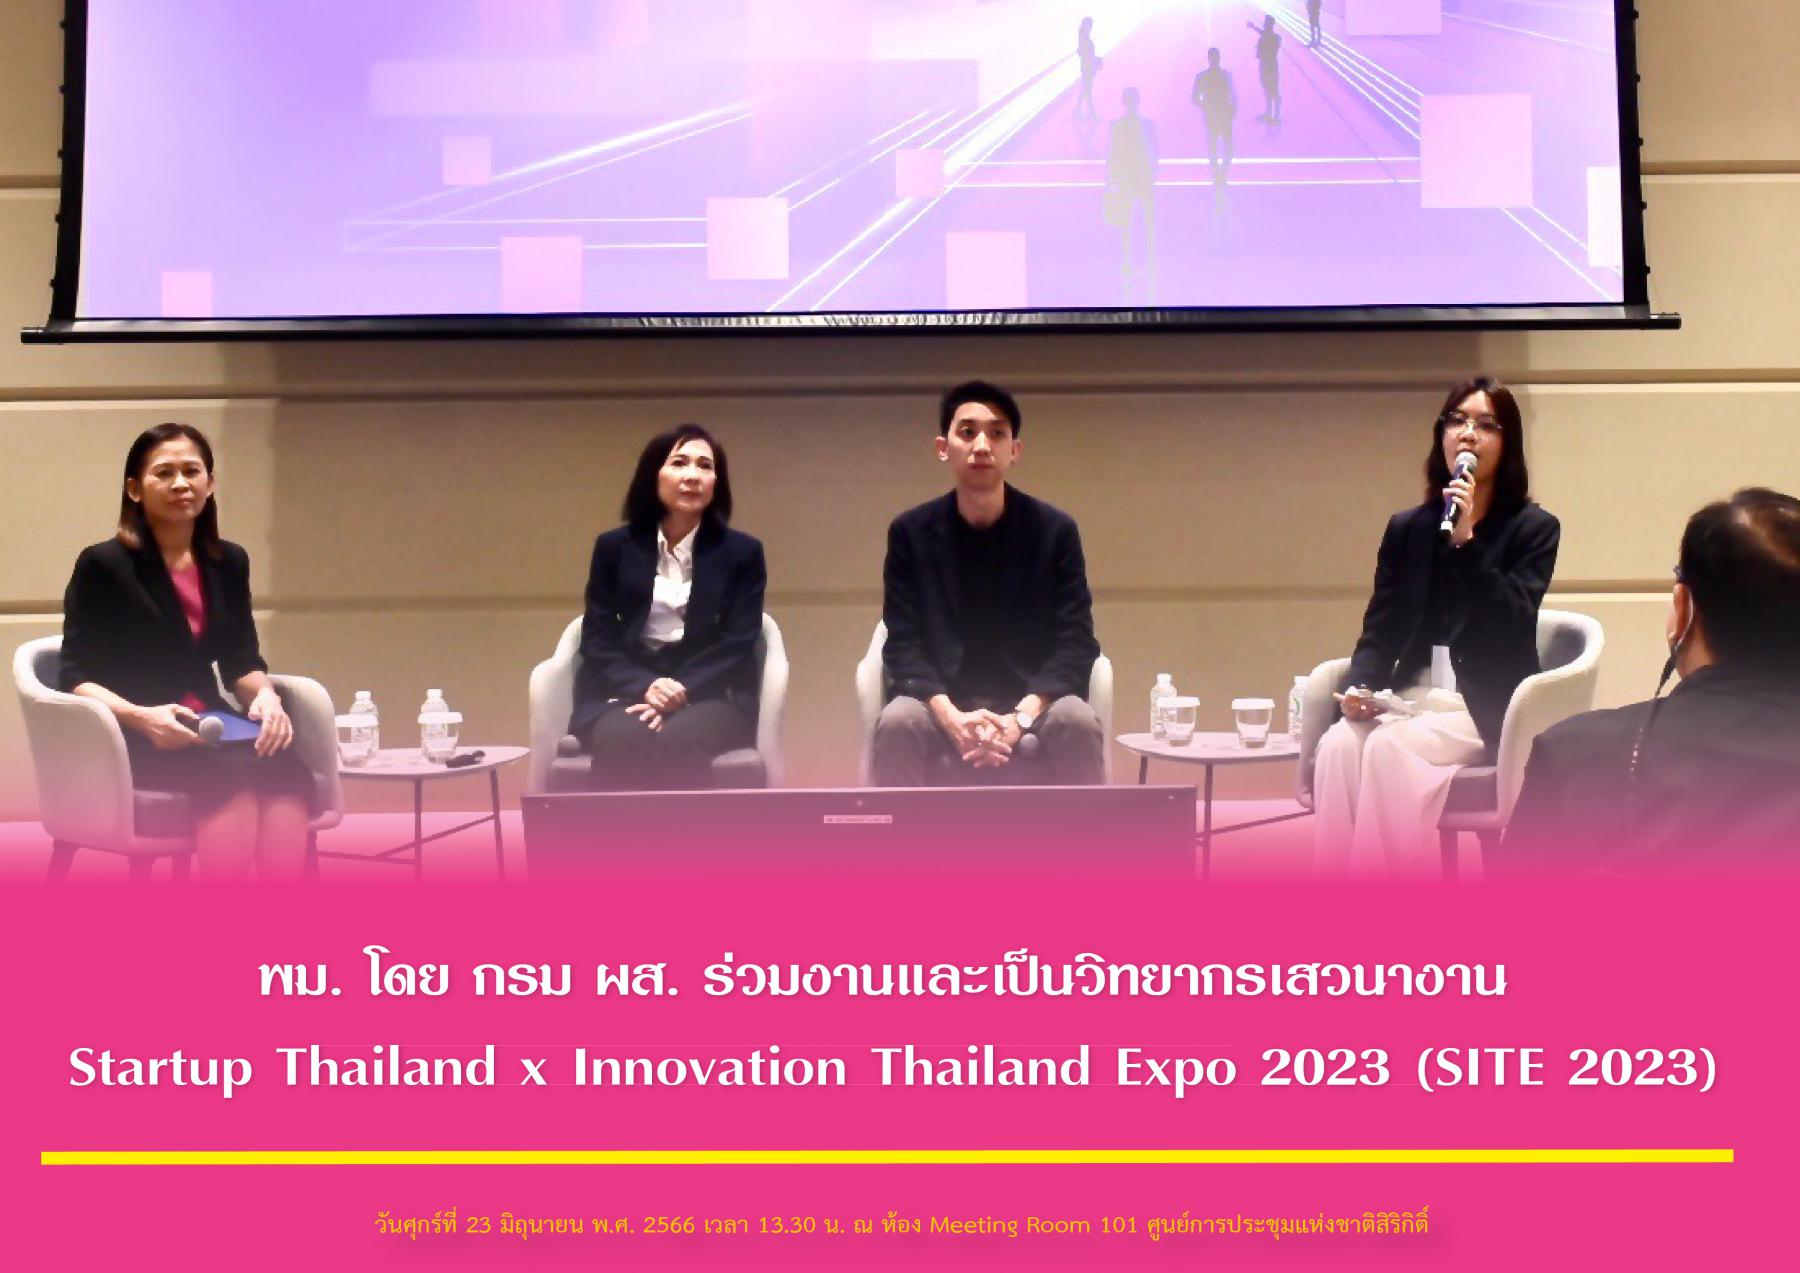 พม. โดย กรม ผส. ร่วมงานและเป็นวิทยากรเสวนางาน Startup Thailand x Innovation Thailand Expo 2023 (SITE 2023)